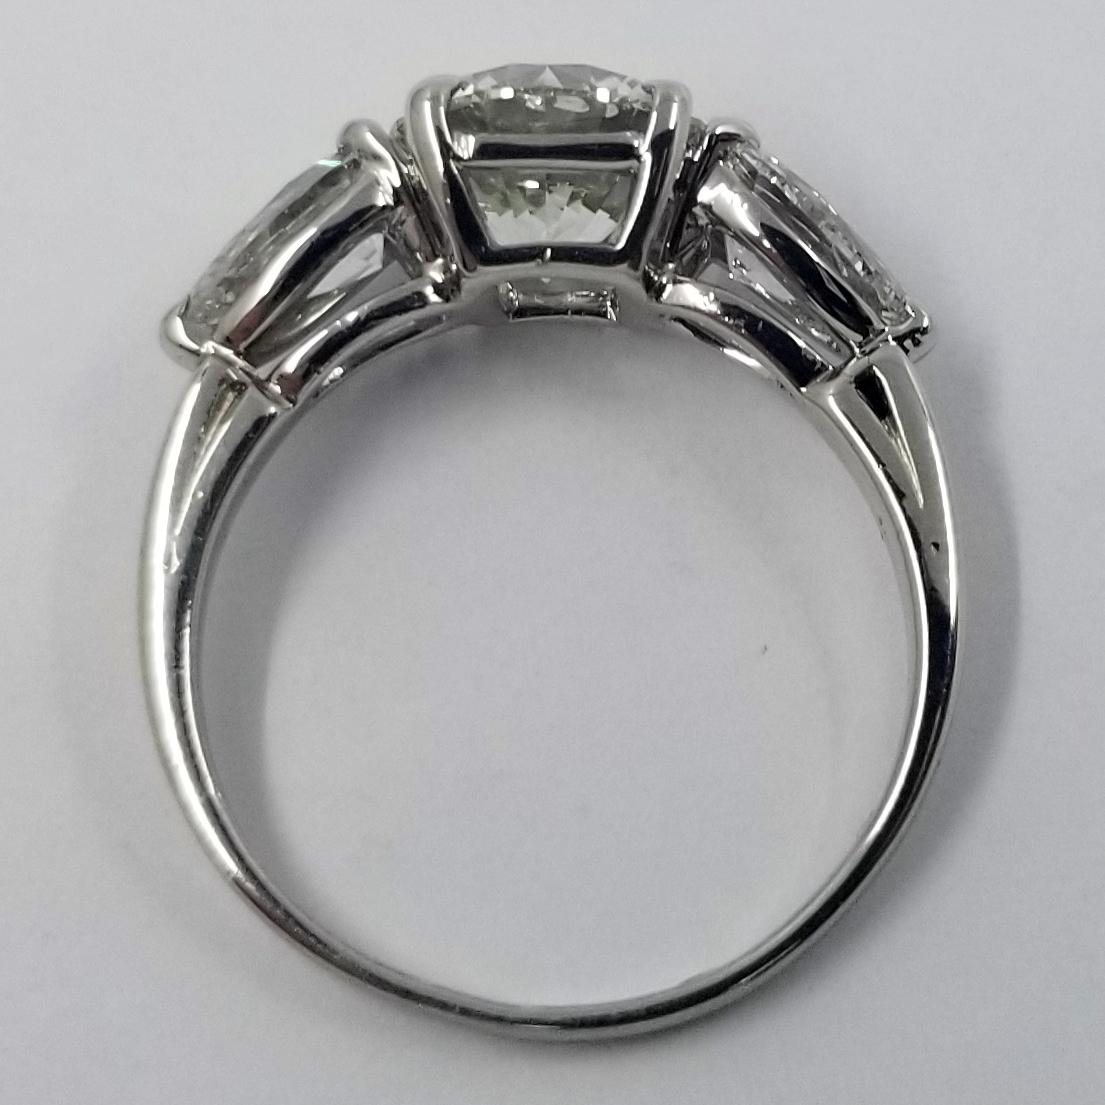 Round Cut 2.05 Carat Round Brilliant Diamond in Platinum Engagement Ring